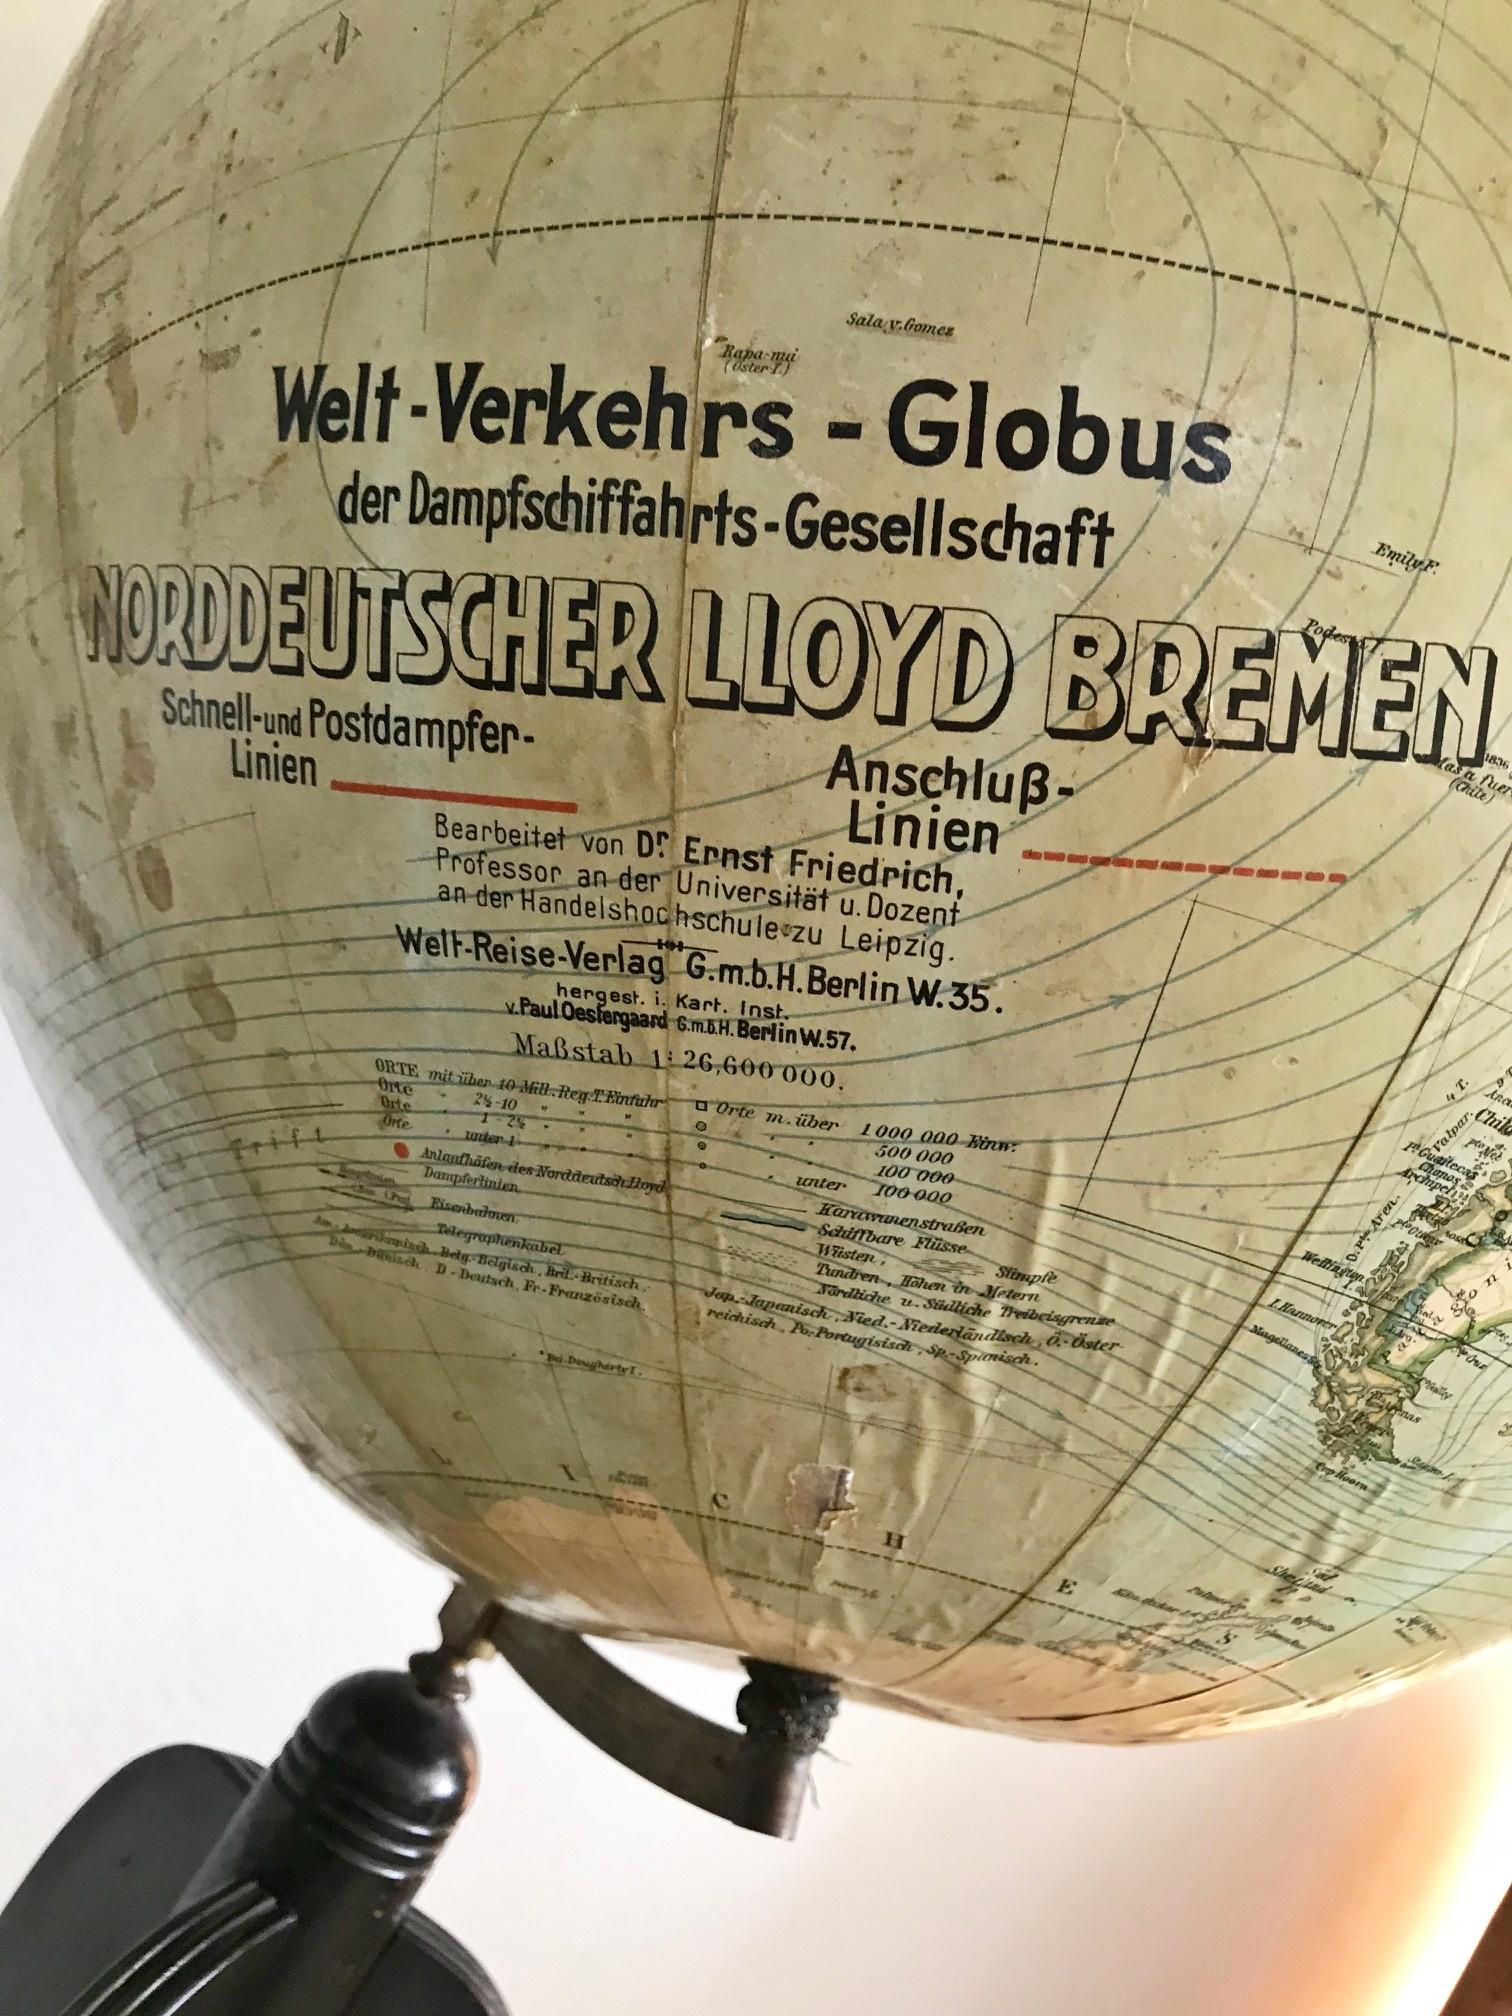 Rare Norddeutscher North German Lloyd Bremen Globe, circa 1910-1912 For Sale 3